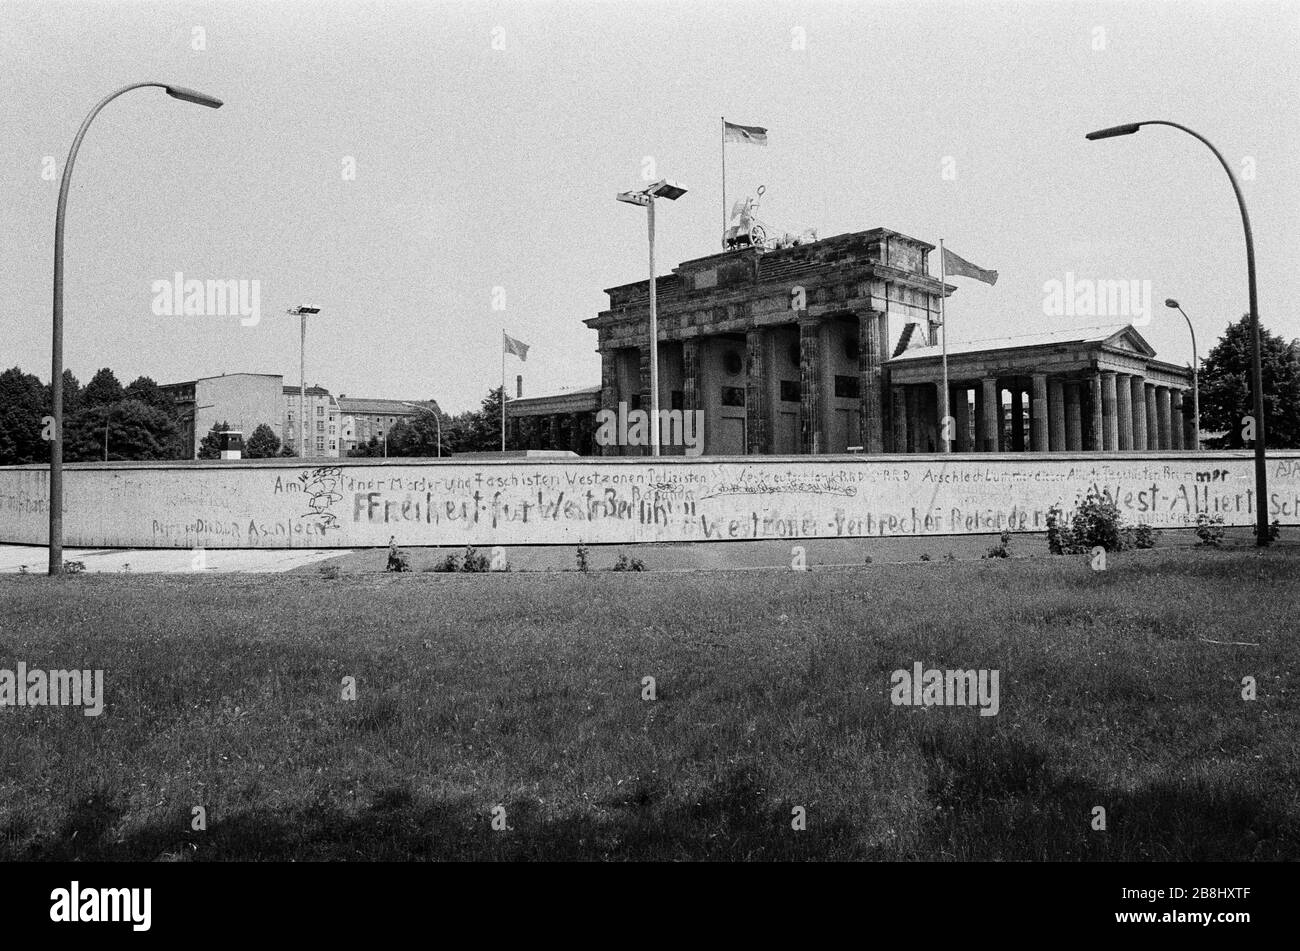 Der Abschnitt der Berliner Mauer am Brandenburger Tor, von der westlichen Seite der Kluft aus gesehen. Die Berliner Mauer war eine von der Deutschen Demokratischen Republik (DDR, Ostdeutschland) am 13. August 1961 errichtete Barriere, die West-Berlin von der umliegenden DDR und von Ost-Berlin völlig abgrenzte. Die Mauer wurde am 9. November 1989 die freie Personenbewegung von Ost nach West erlaubt. Stockfoto